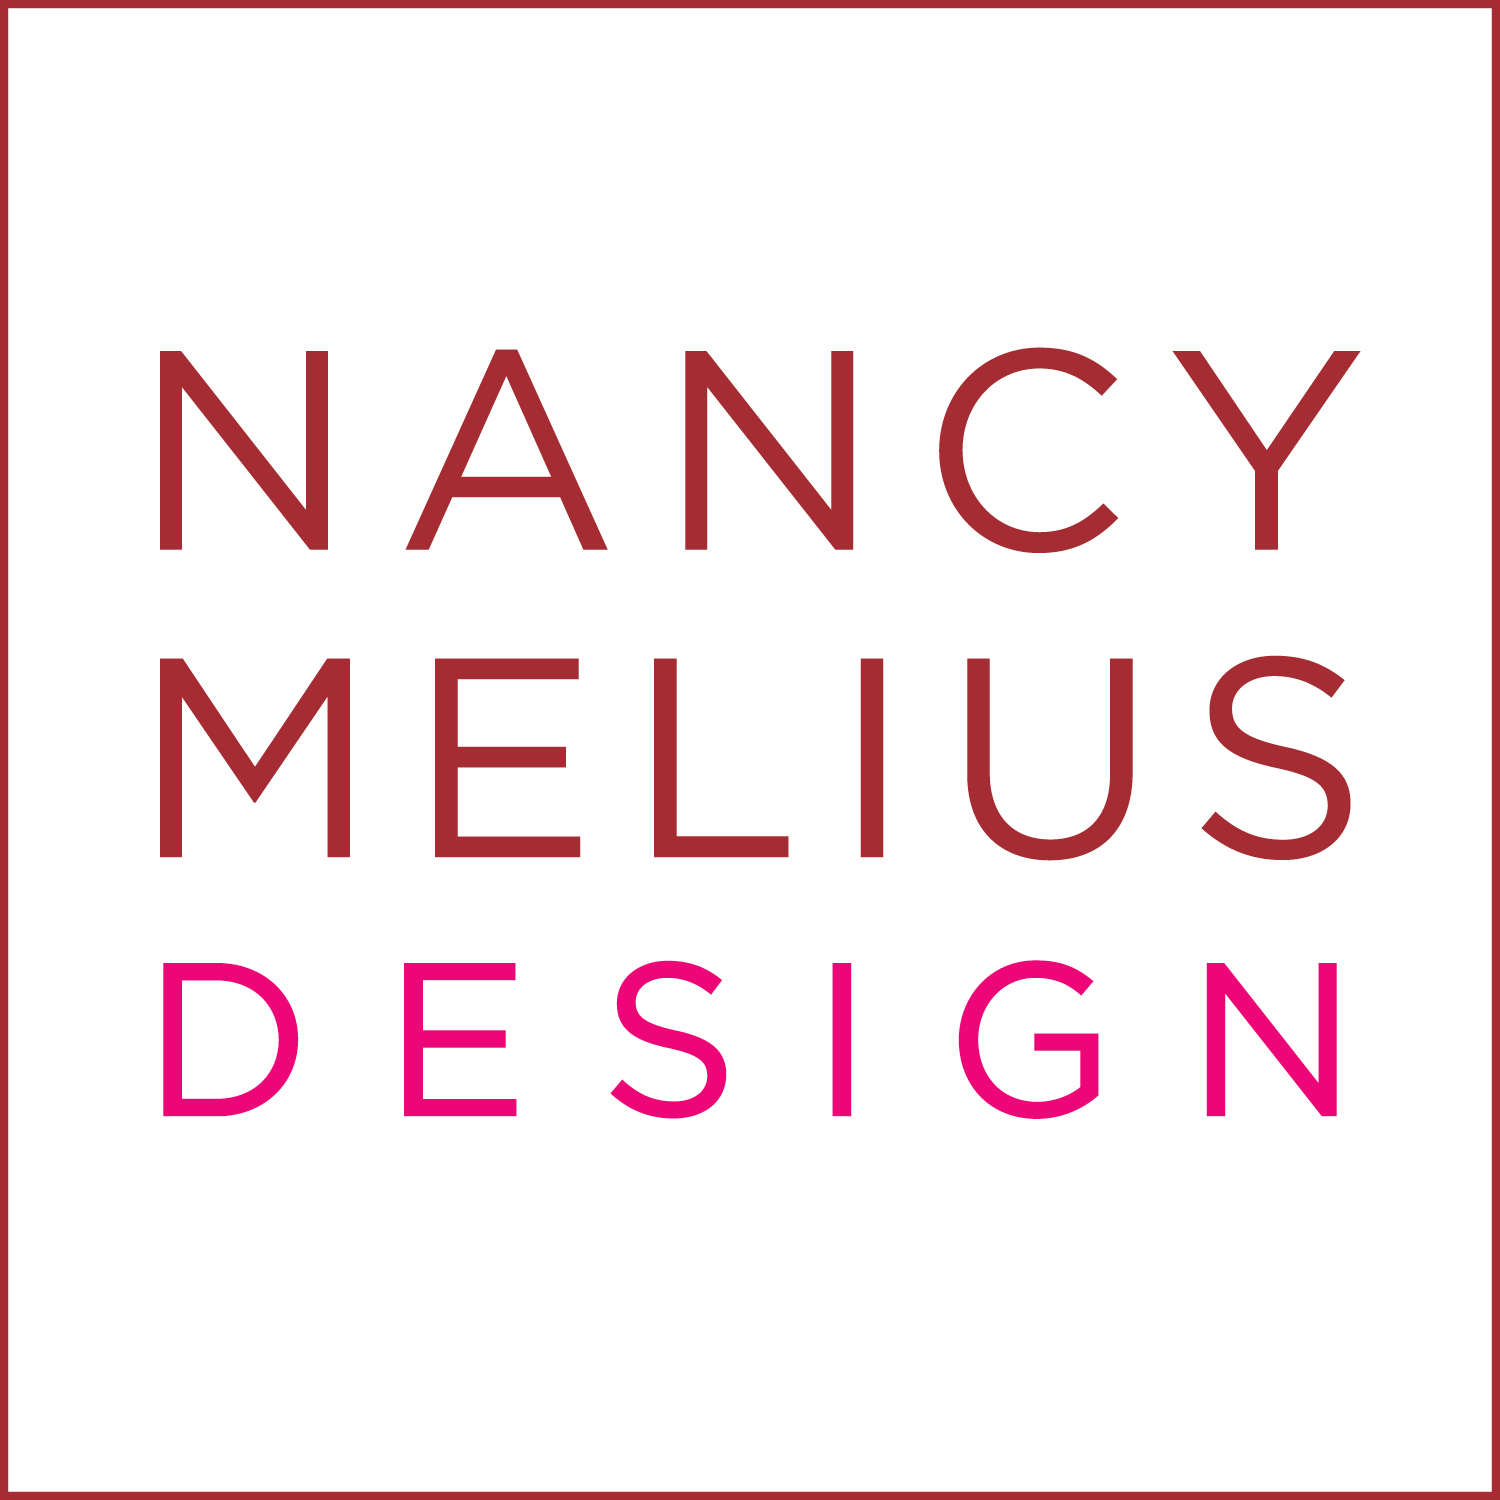 NANCY MELIUS DESIGN